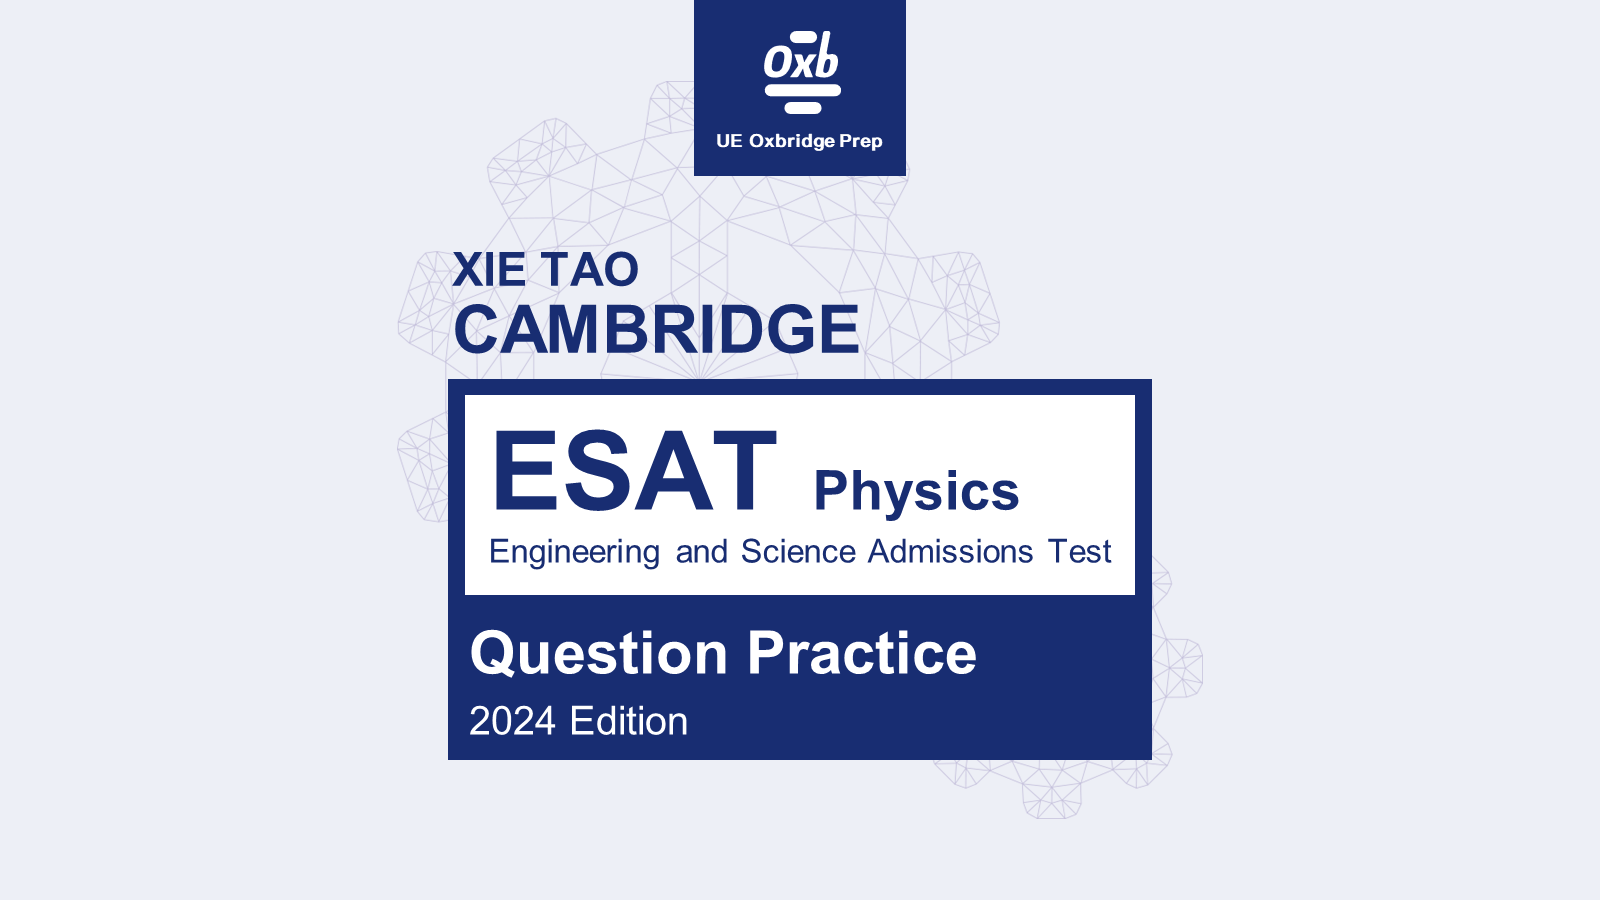 ESAT Physics Part Question Practice